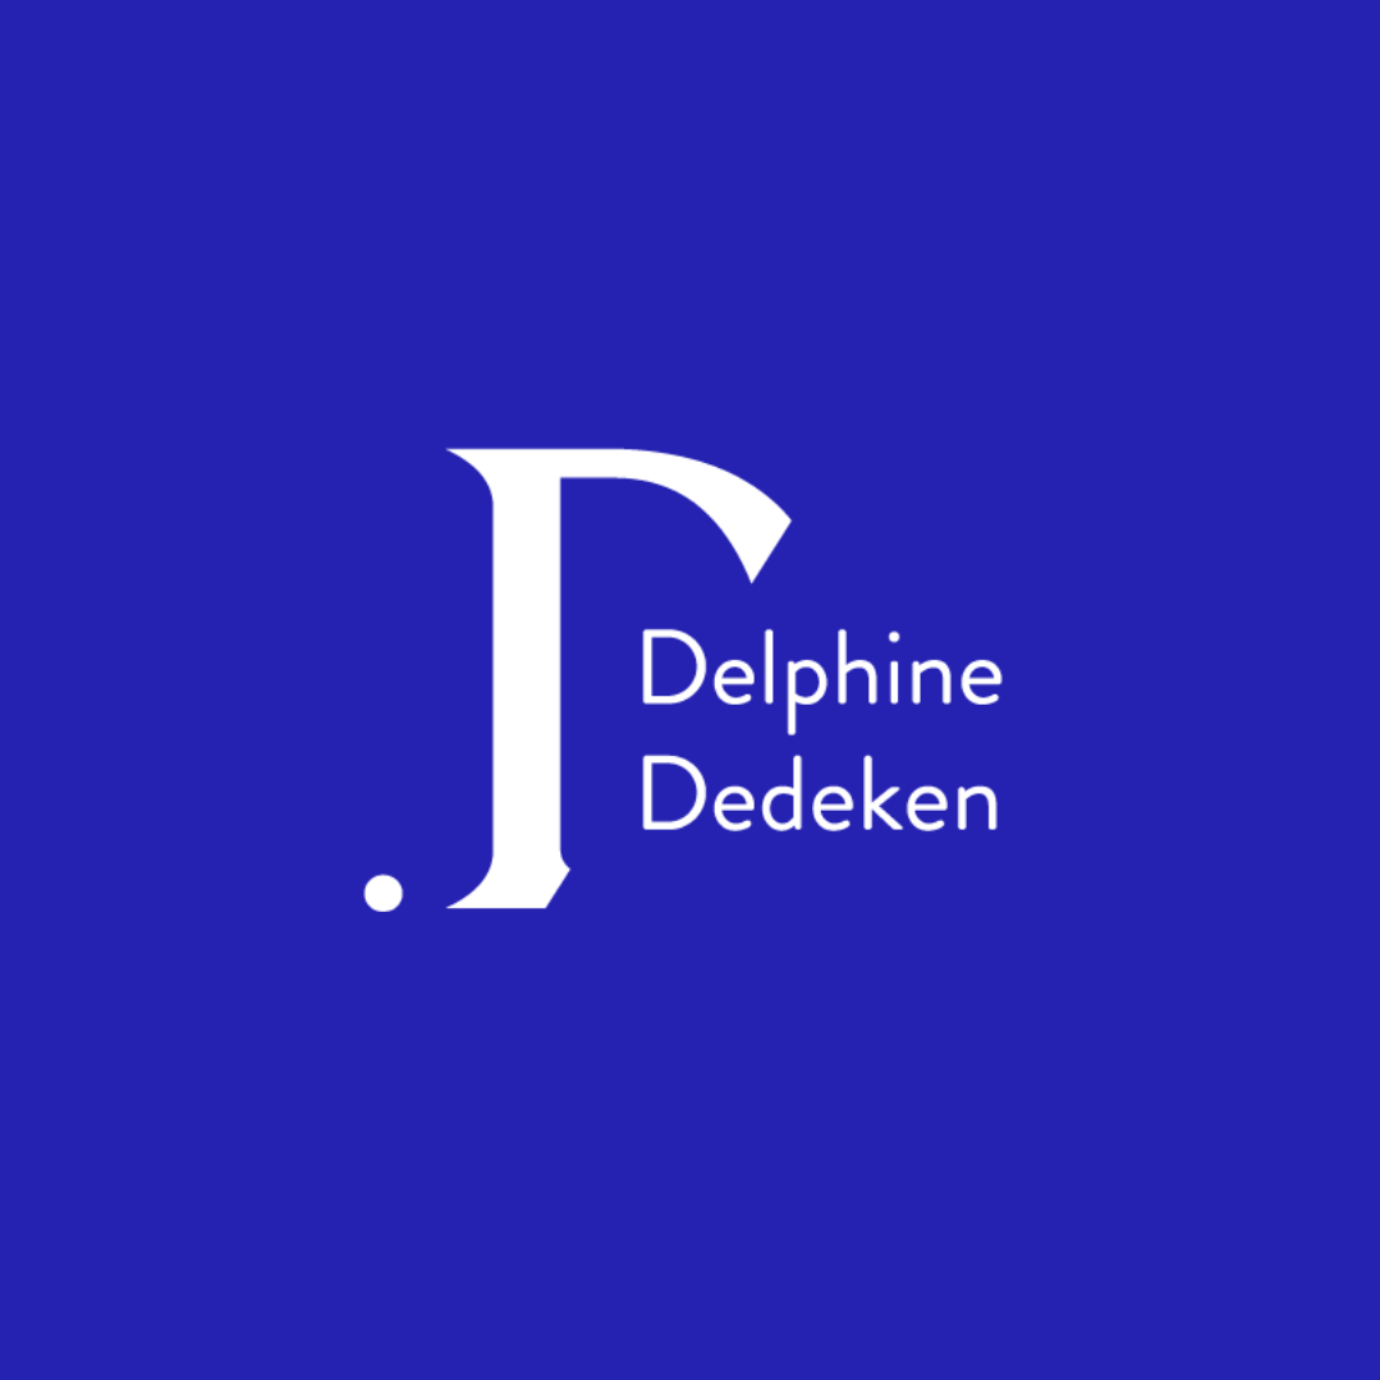 Delphine dedeken